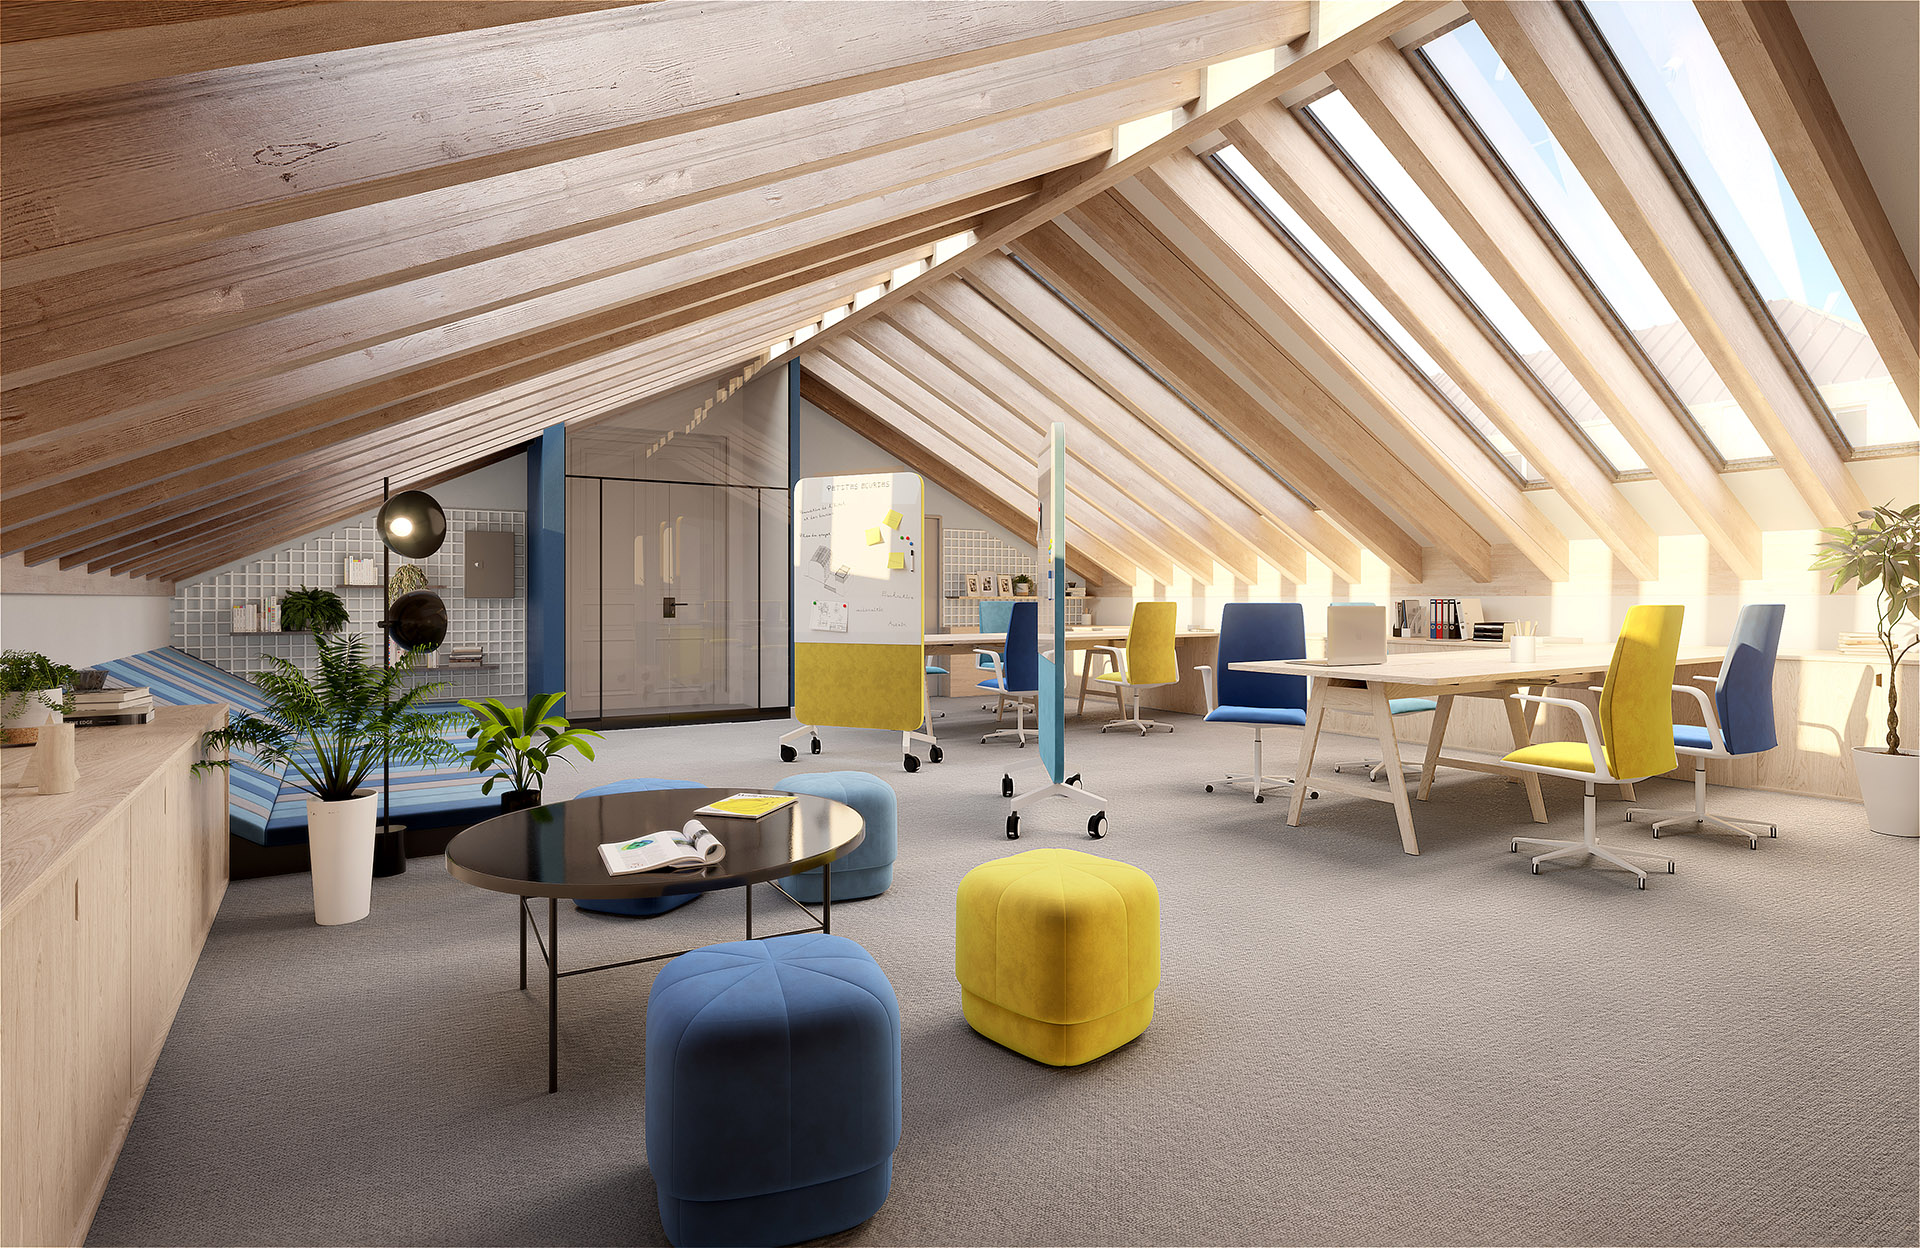 Visualisation 3D des intérieurs de bureaux modernes et conviviaux